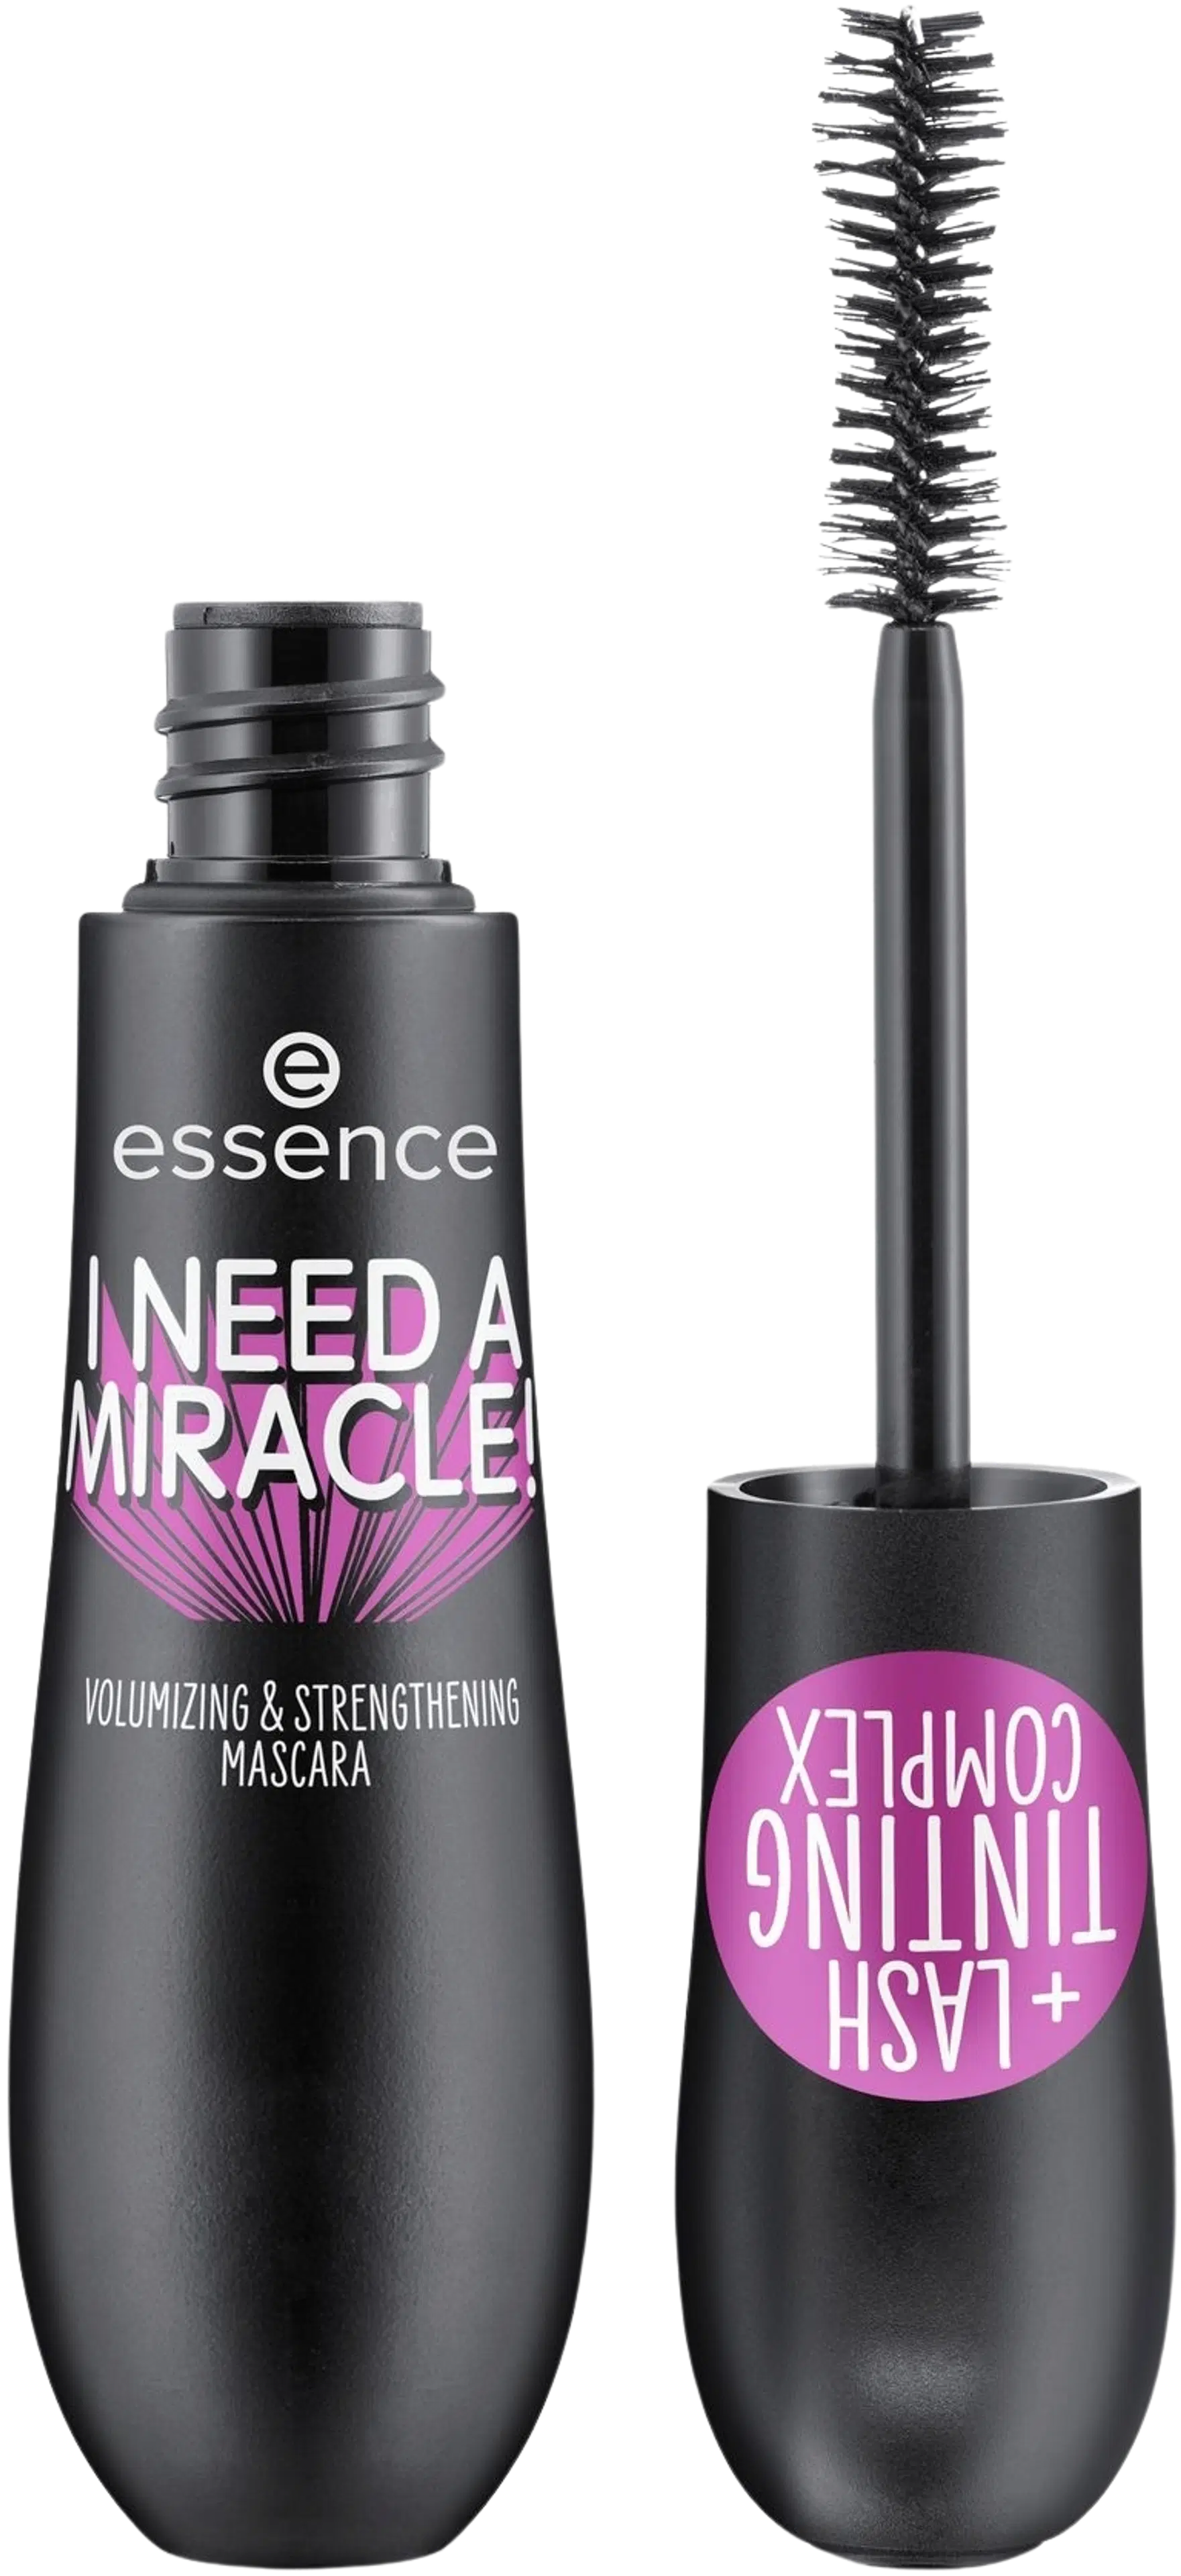 essence I NEED A MIRACLE! Volumizing & Strengthening mascara 16 ml